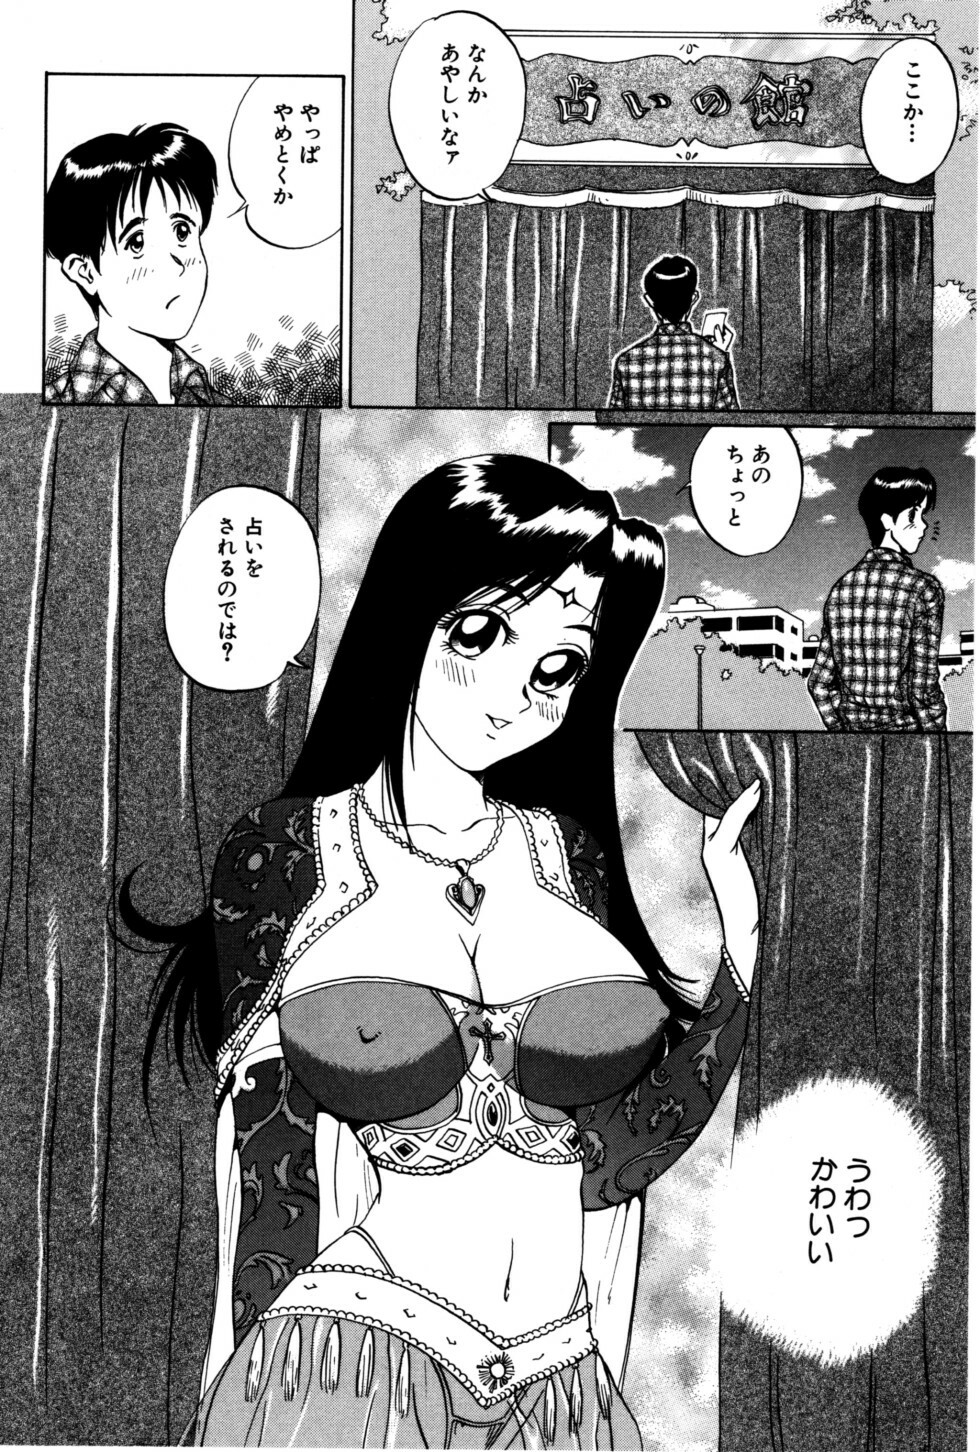 [Shirogane Anjyu] Nukumori No Kioku page 6 full